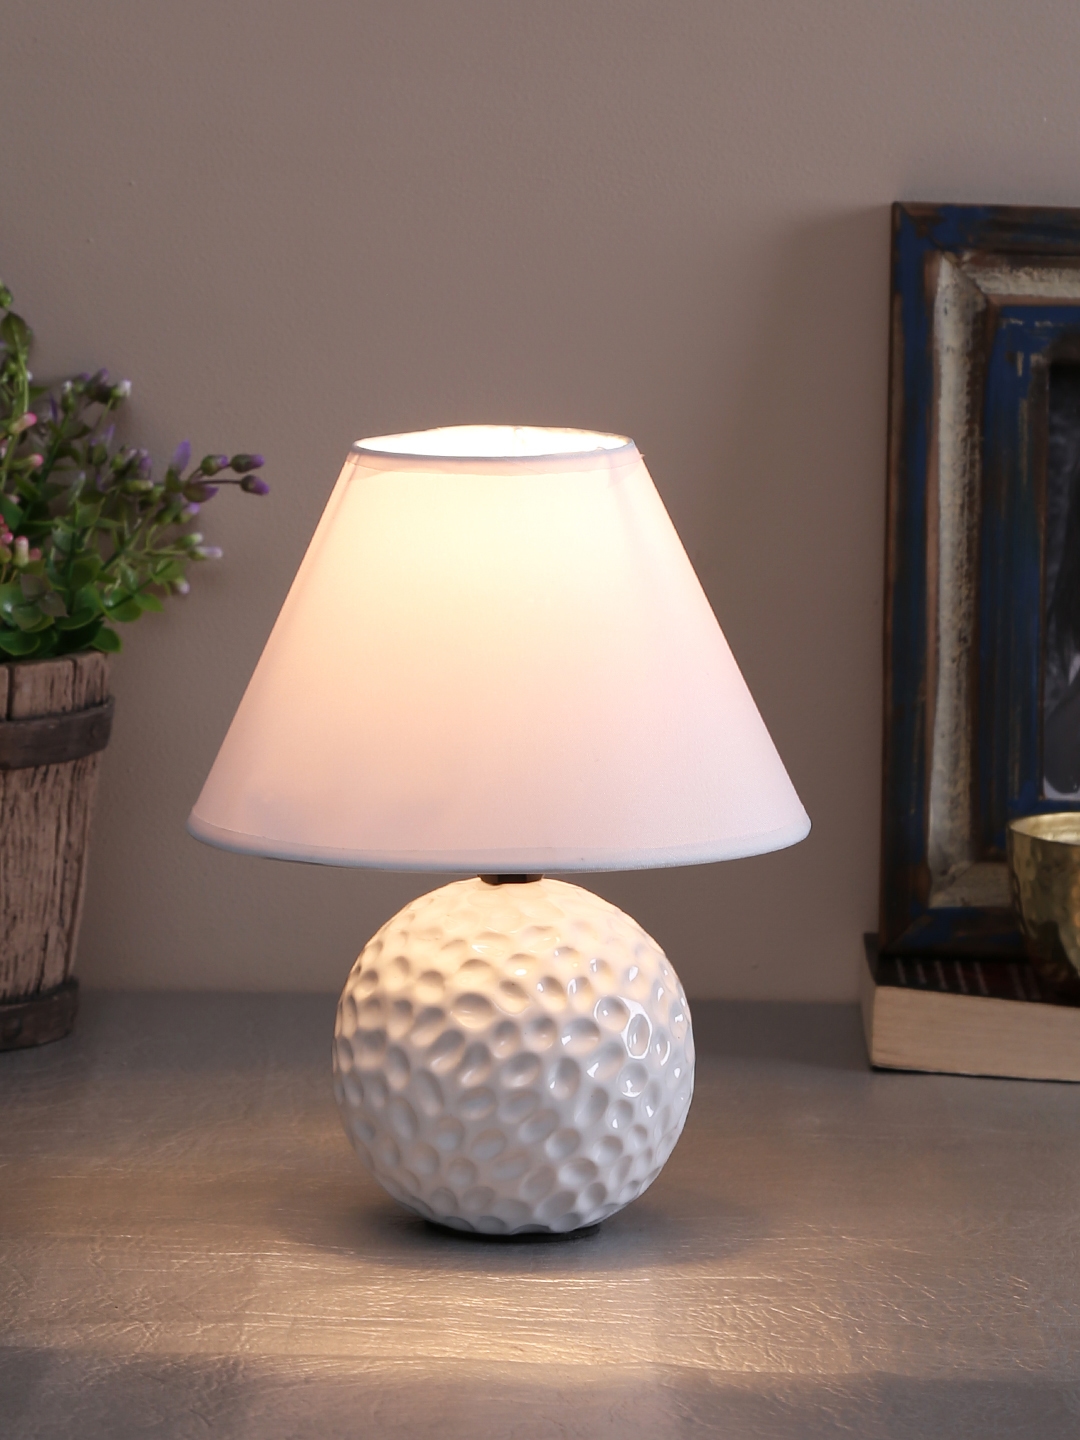 TAYHAA White Textured Frustum-Shaped Table Lamp